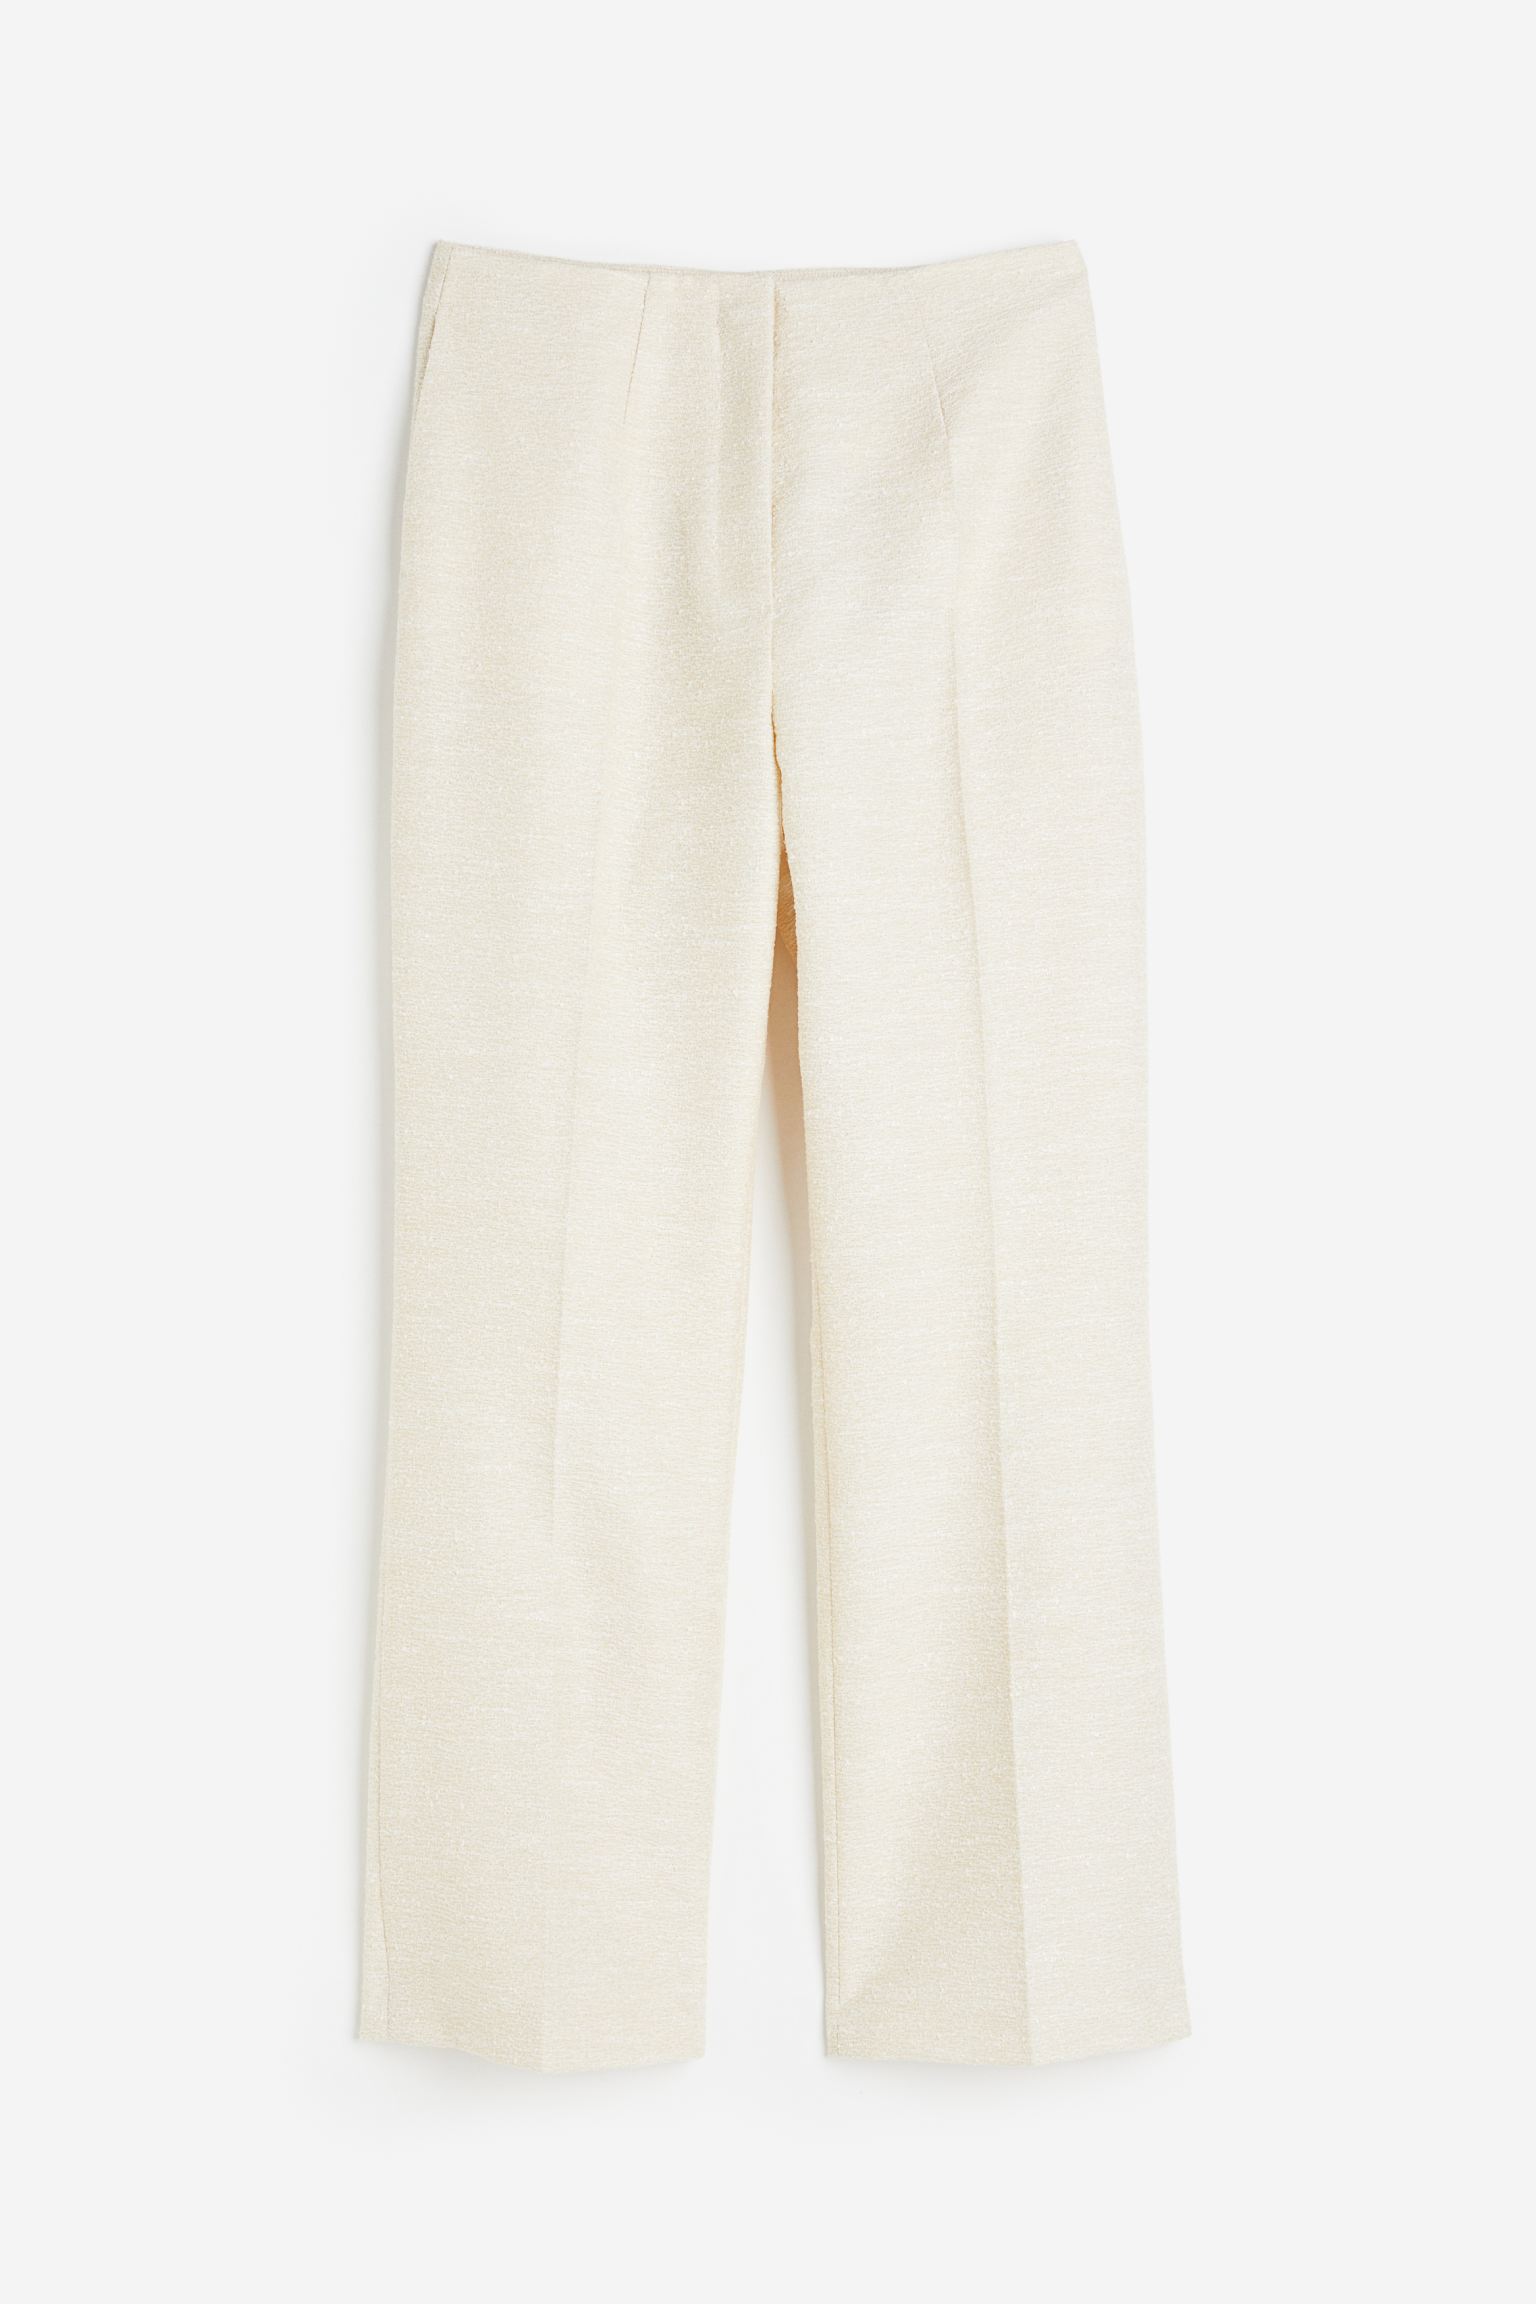 Брюки H&M Structured Weave, кремовый узкие брюки со складками спереди fransa curve stretch коричневый